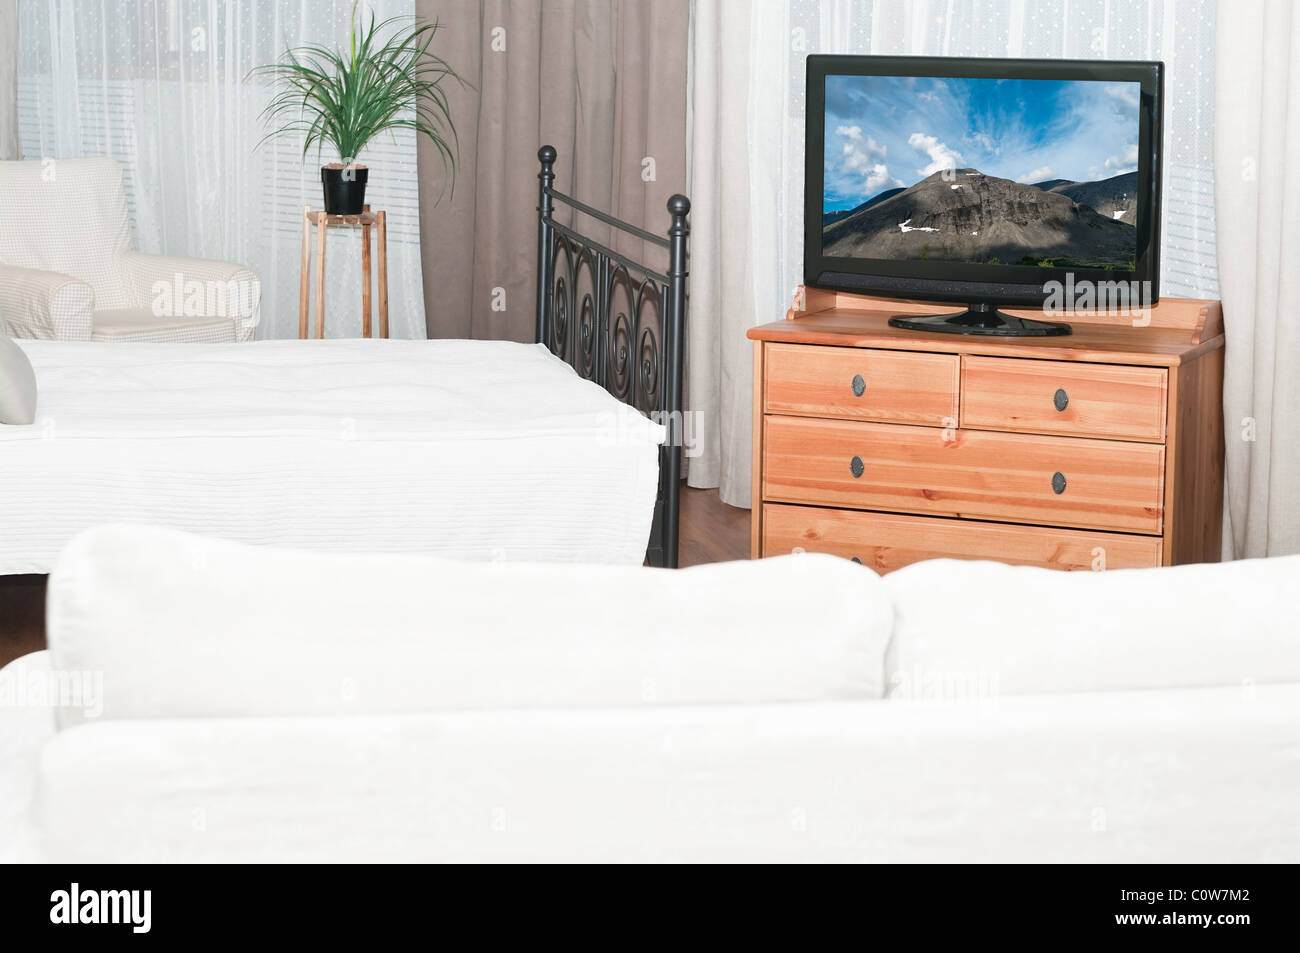 Den großen Fernseher in einem Raum vor einem weißen Sofa. Ein Schlafzimmer mit einem Bett Stockfoto